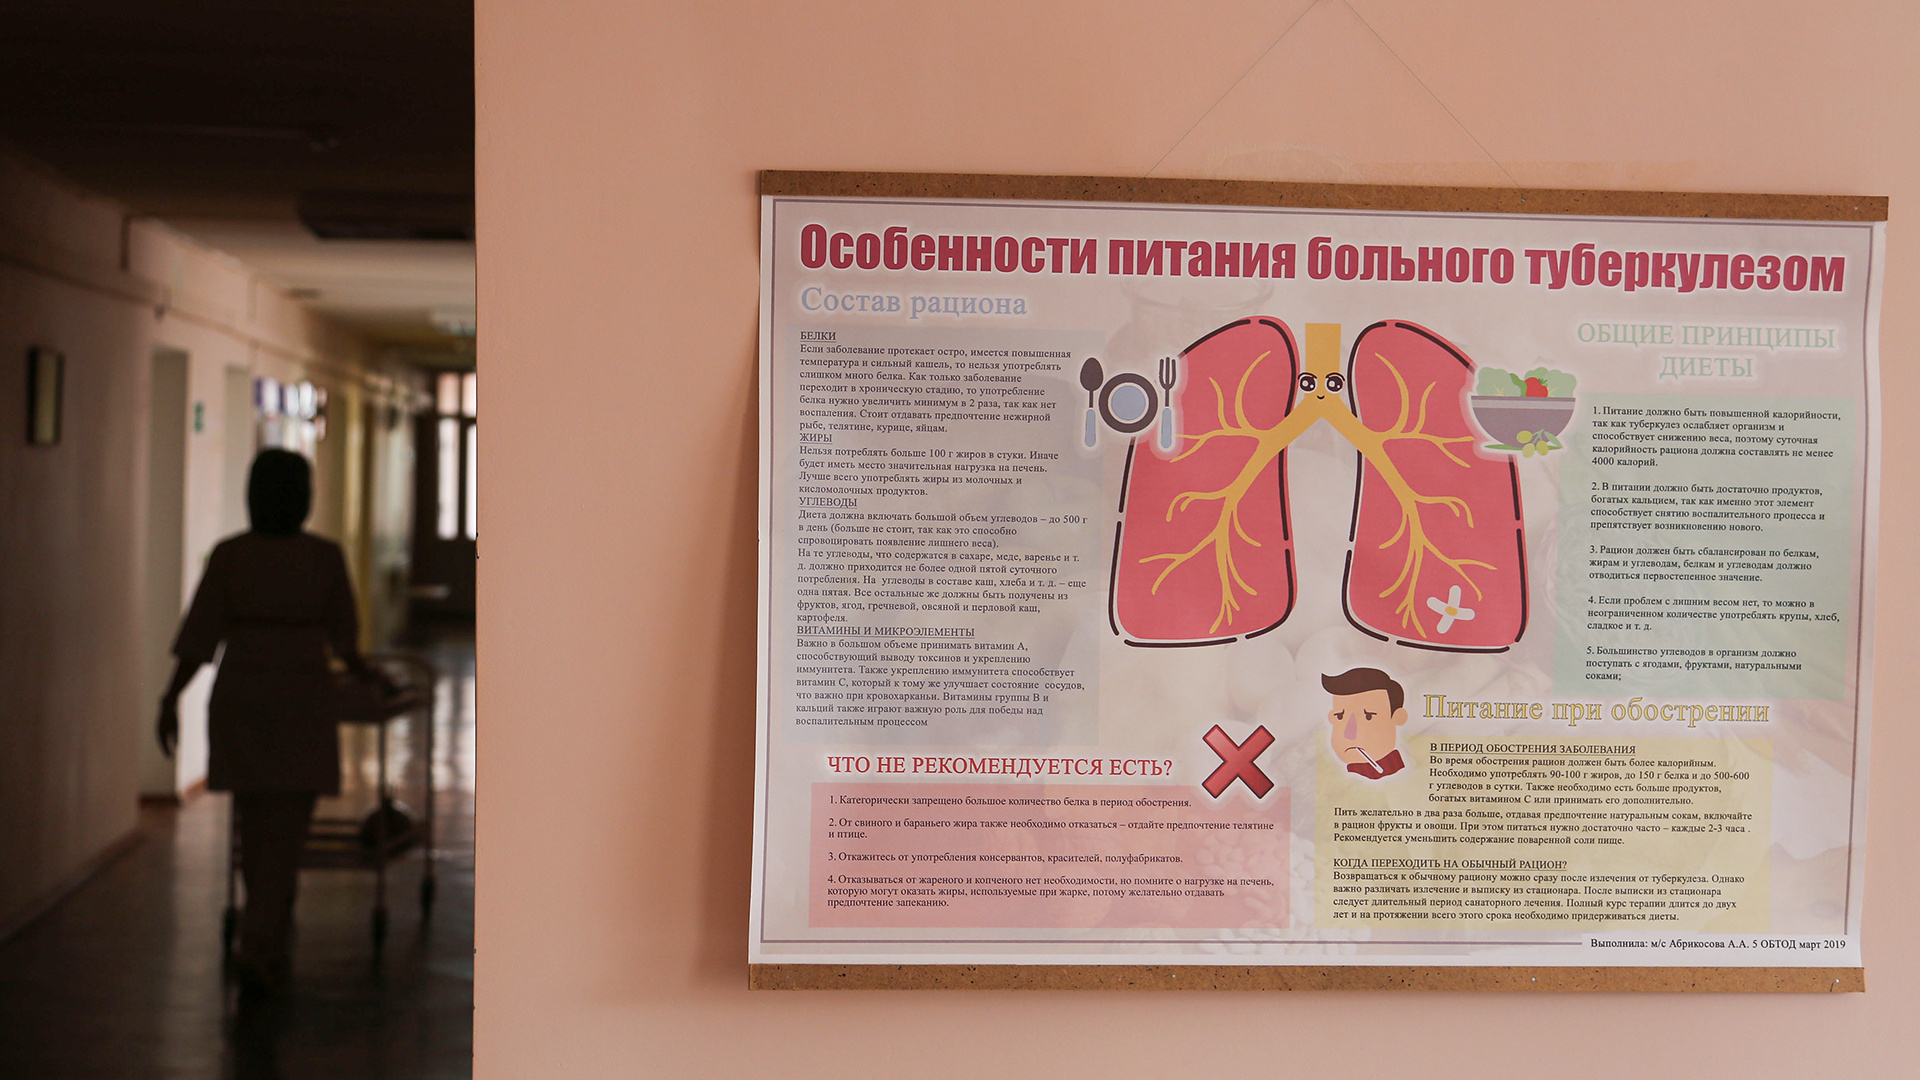 Заразиться можно где угодно: факты о туберкулезе, которые должен знать каждый